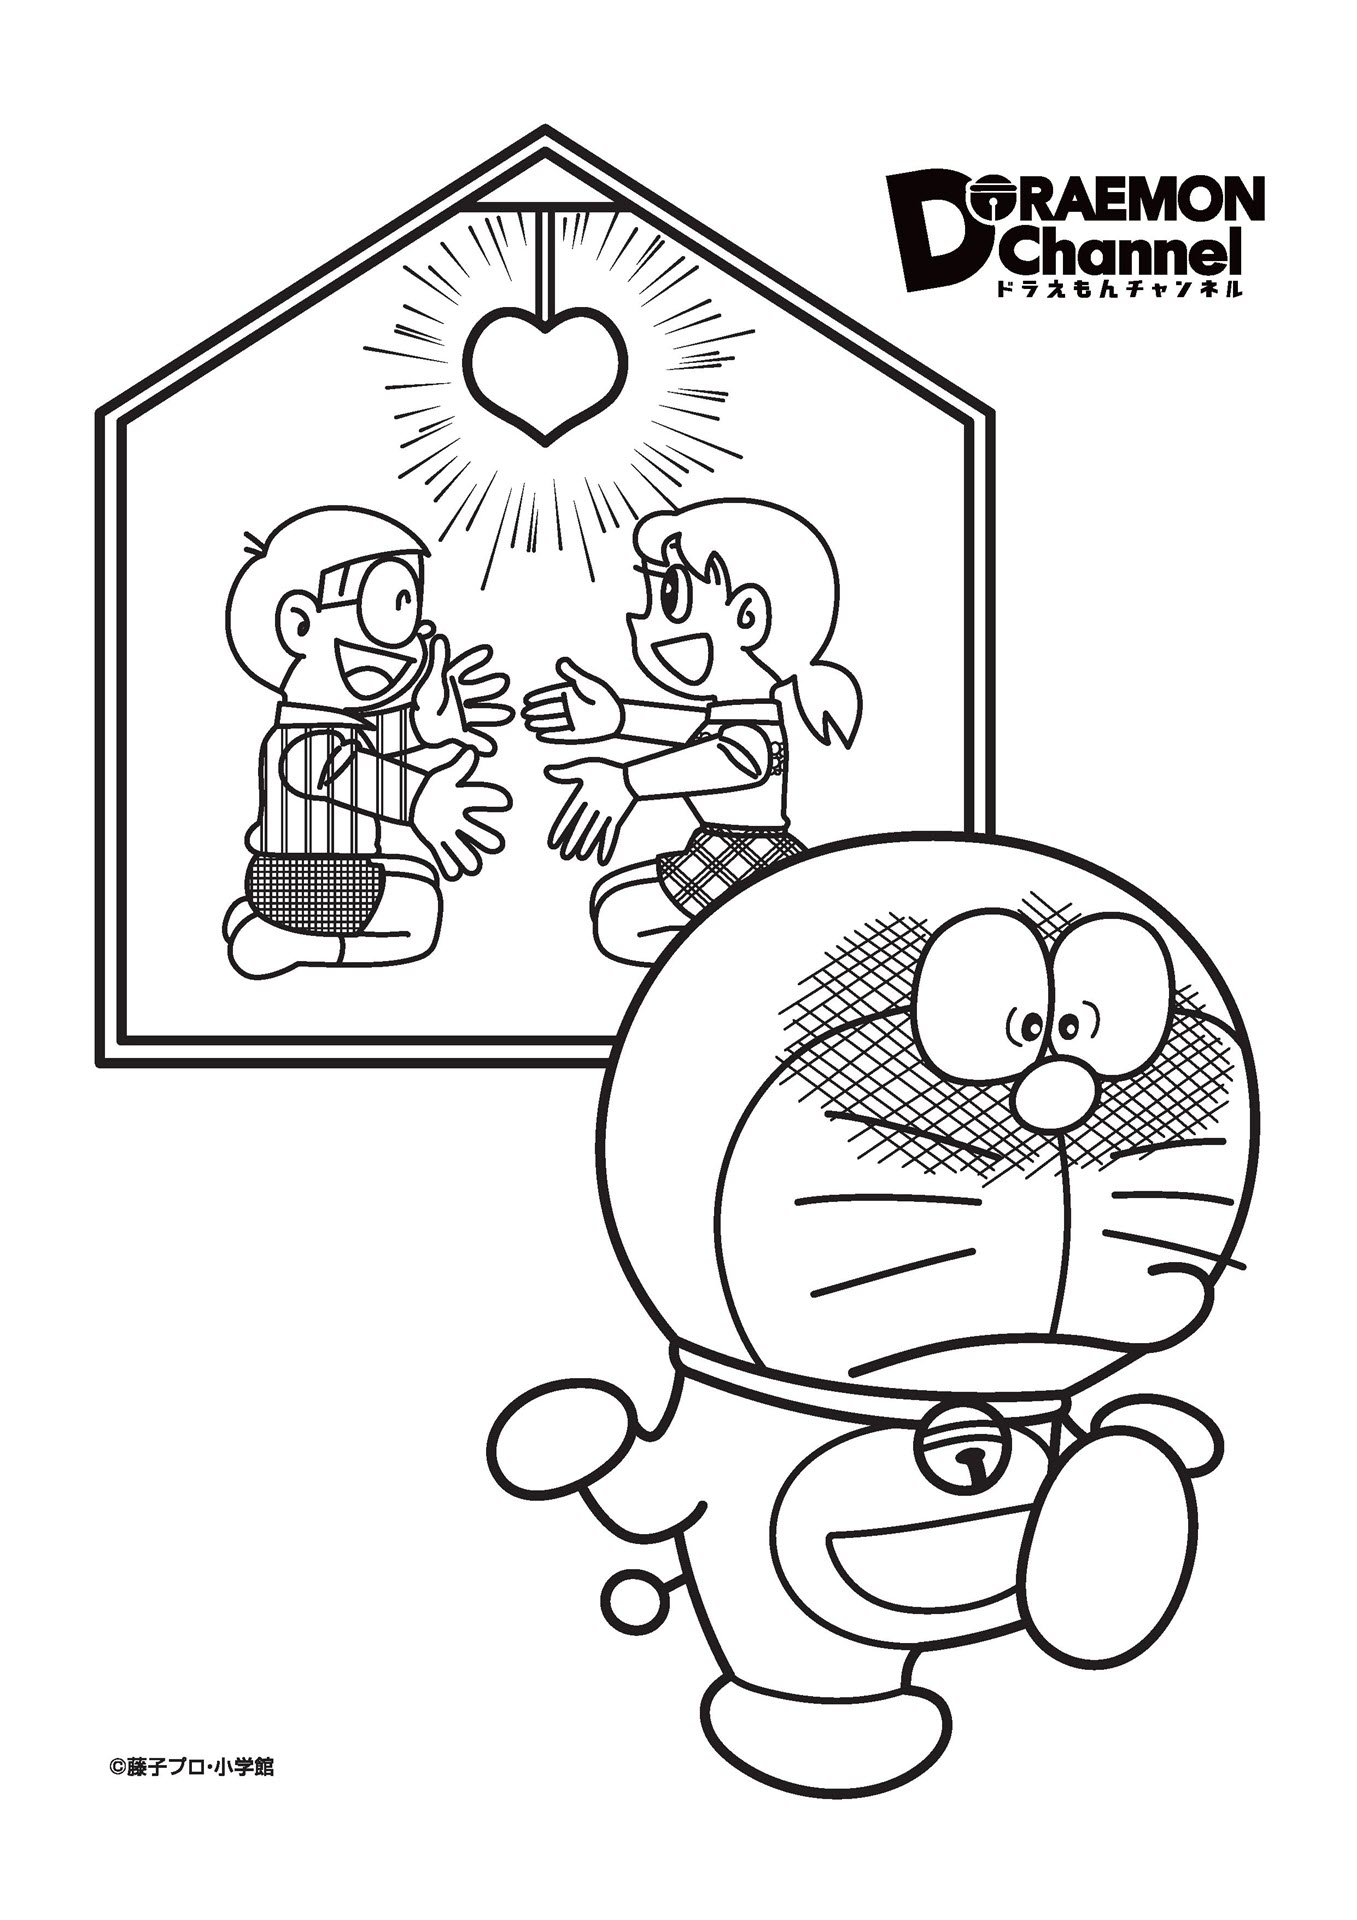 Hình tô màu Doremon và Nobita